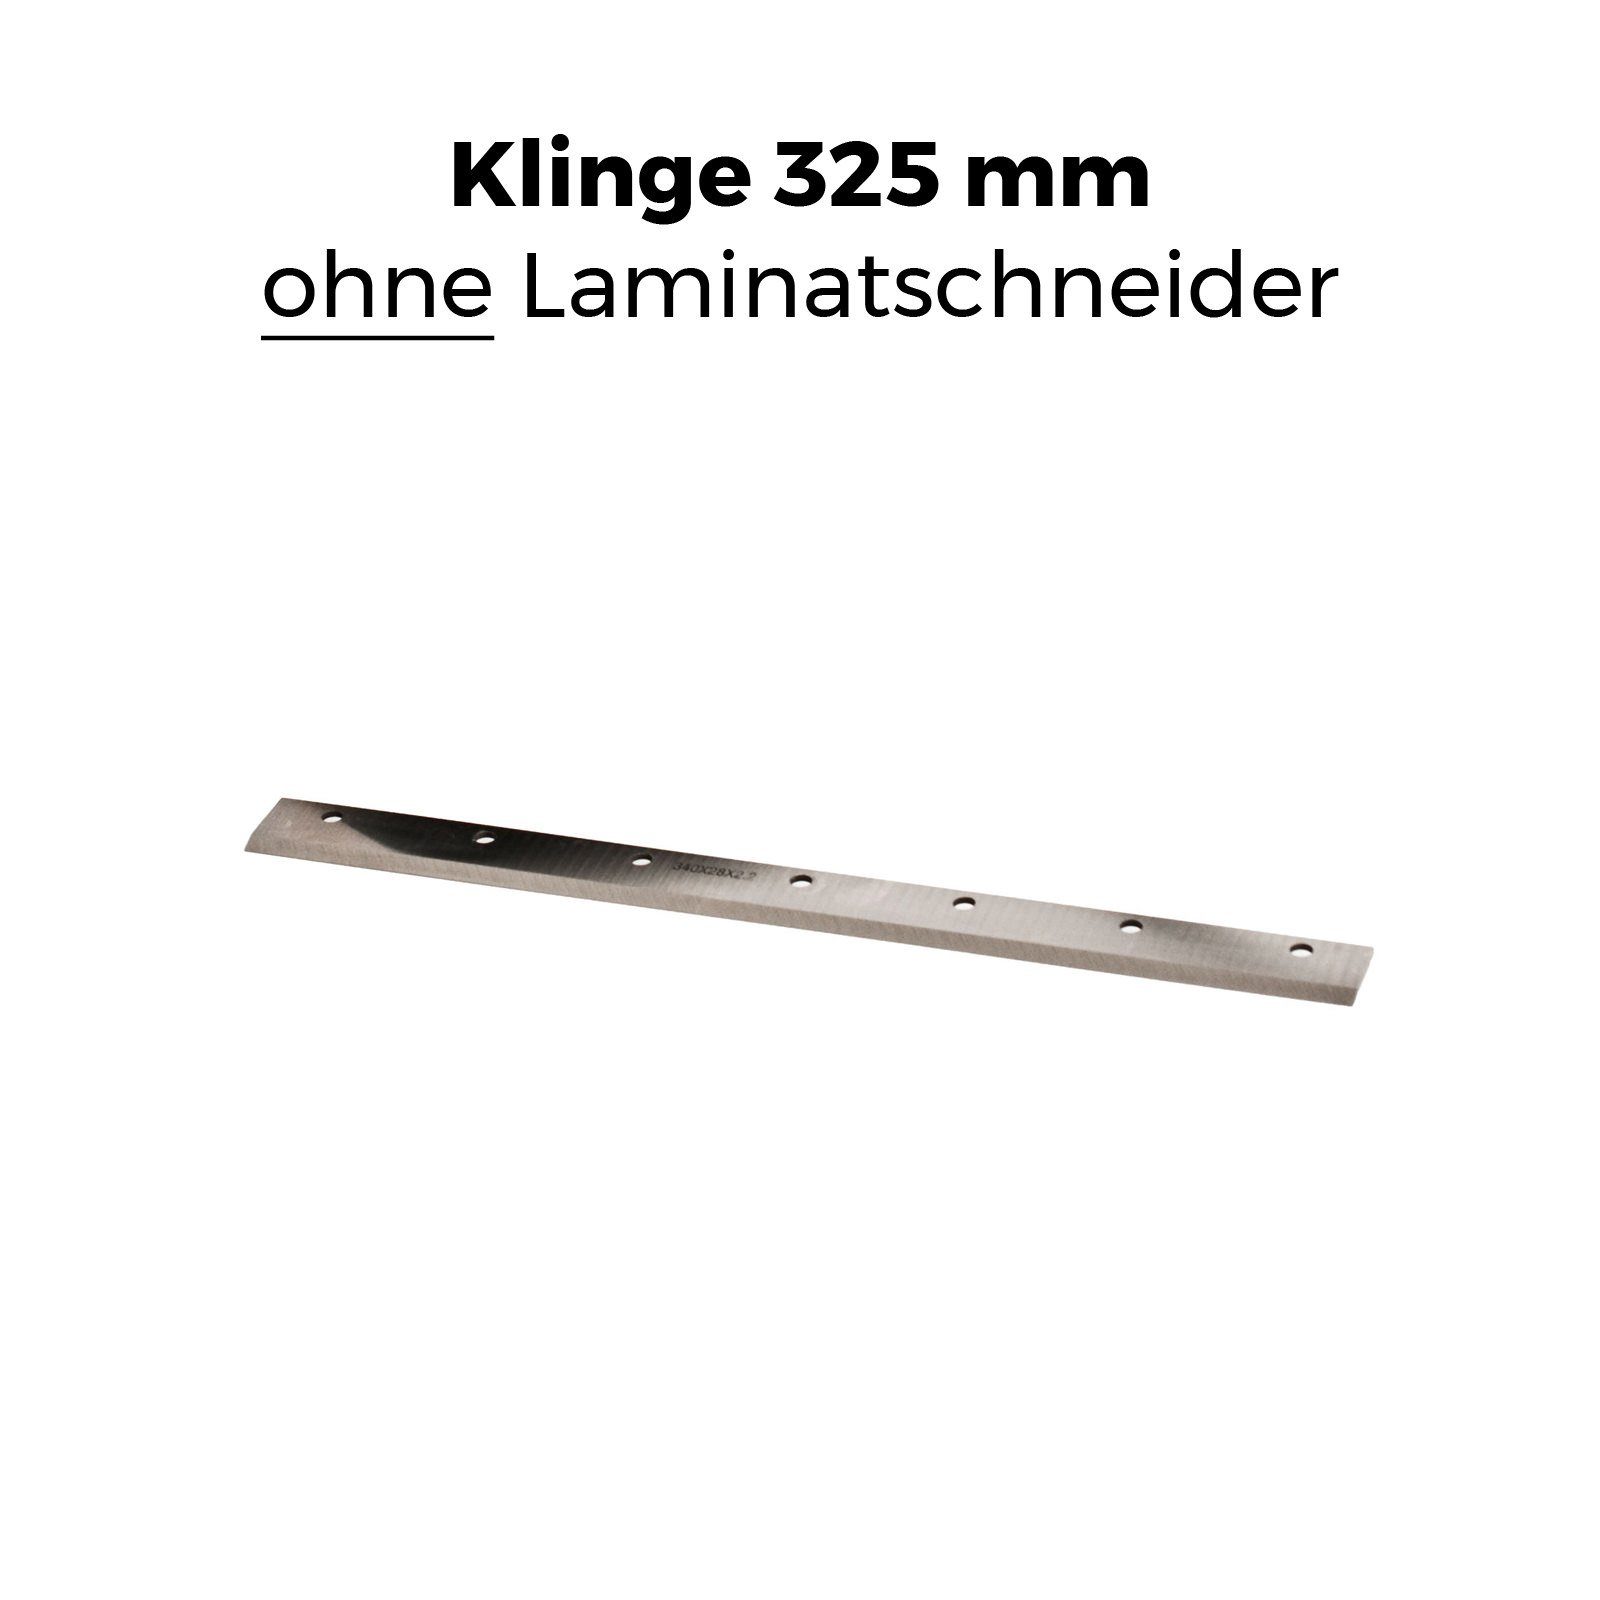 mm » + I », BAUTEC Ersatzklinge in II Schnittbreite: » Modell 32.5 cm, gehärteter geprüft max. Stahl für 325 GS-TÜV Laminatschneider passend